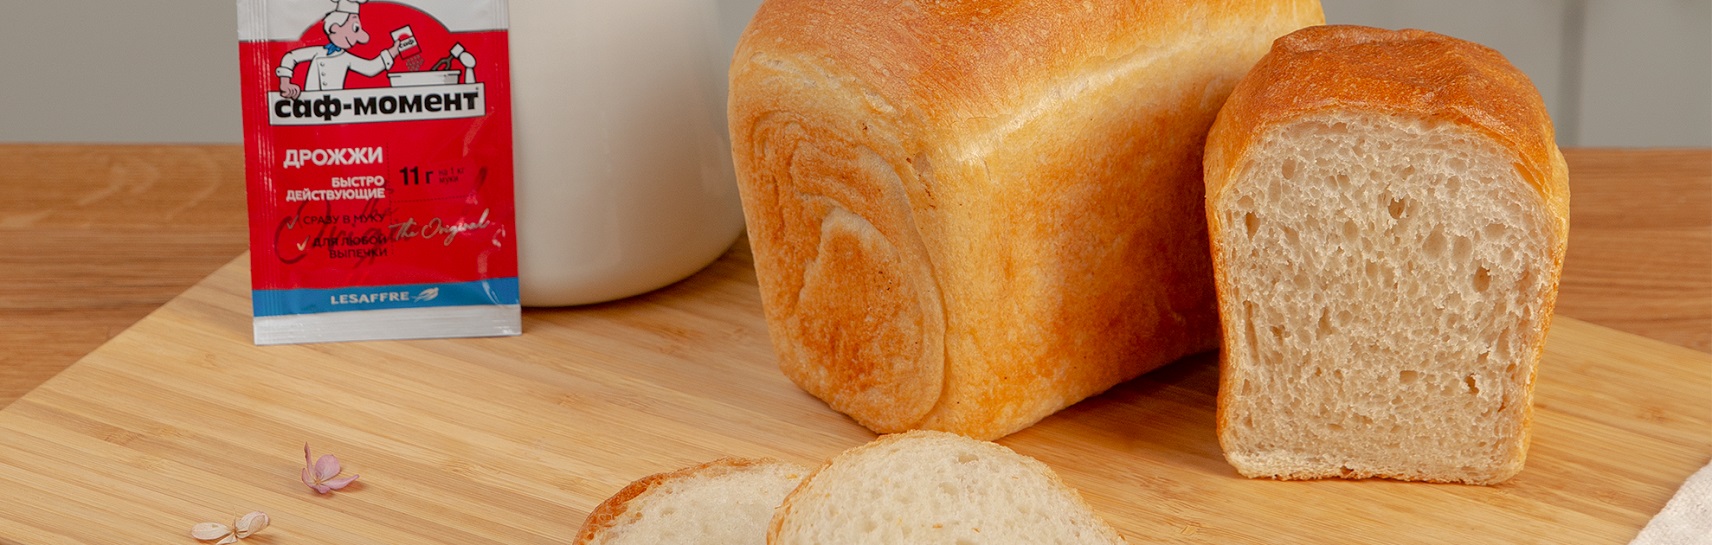 Пшеничный постный формовой хлеб